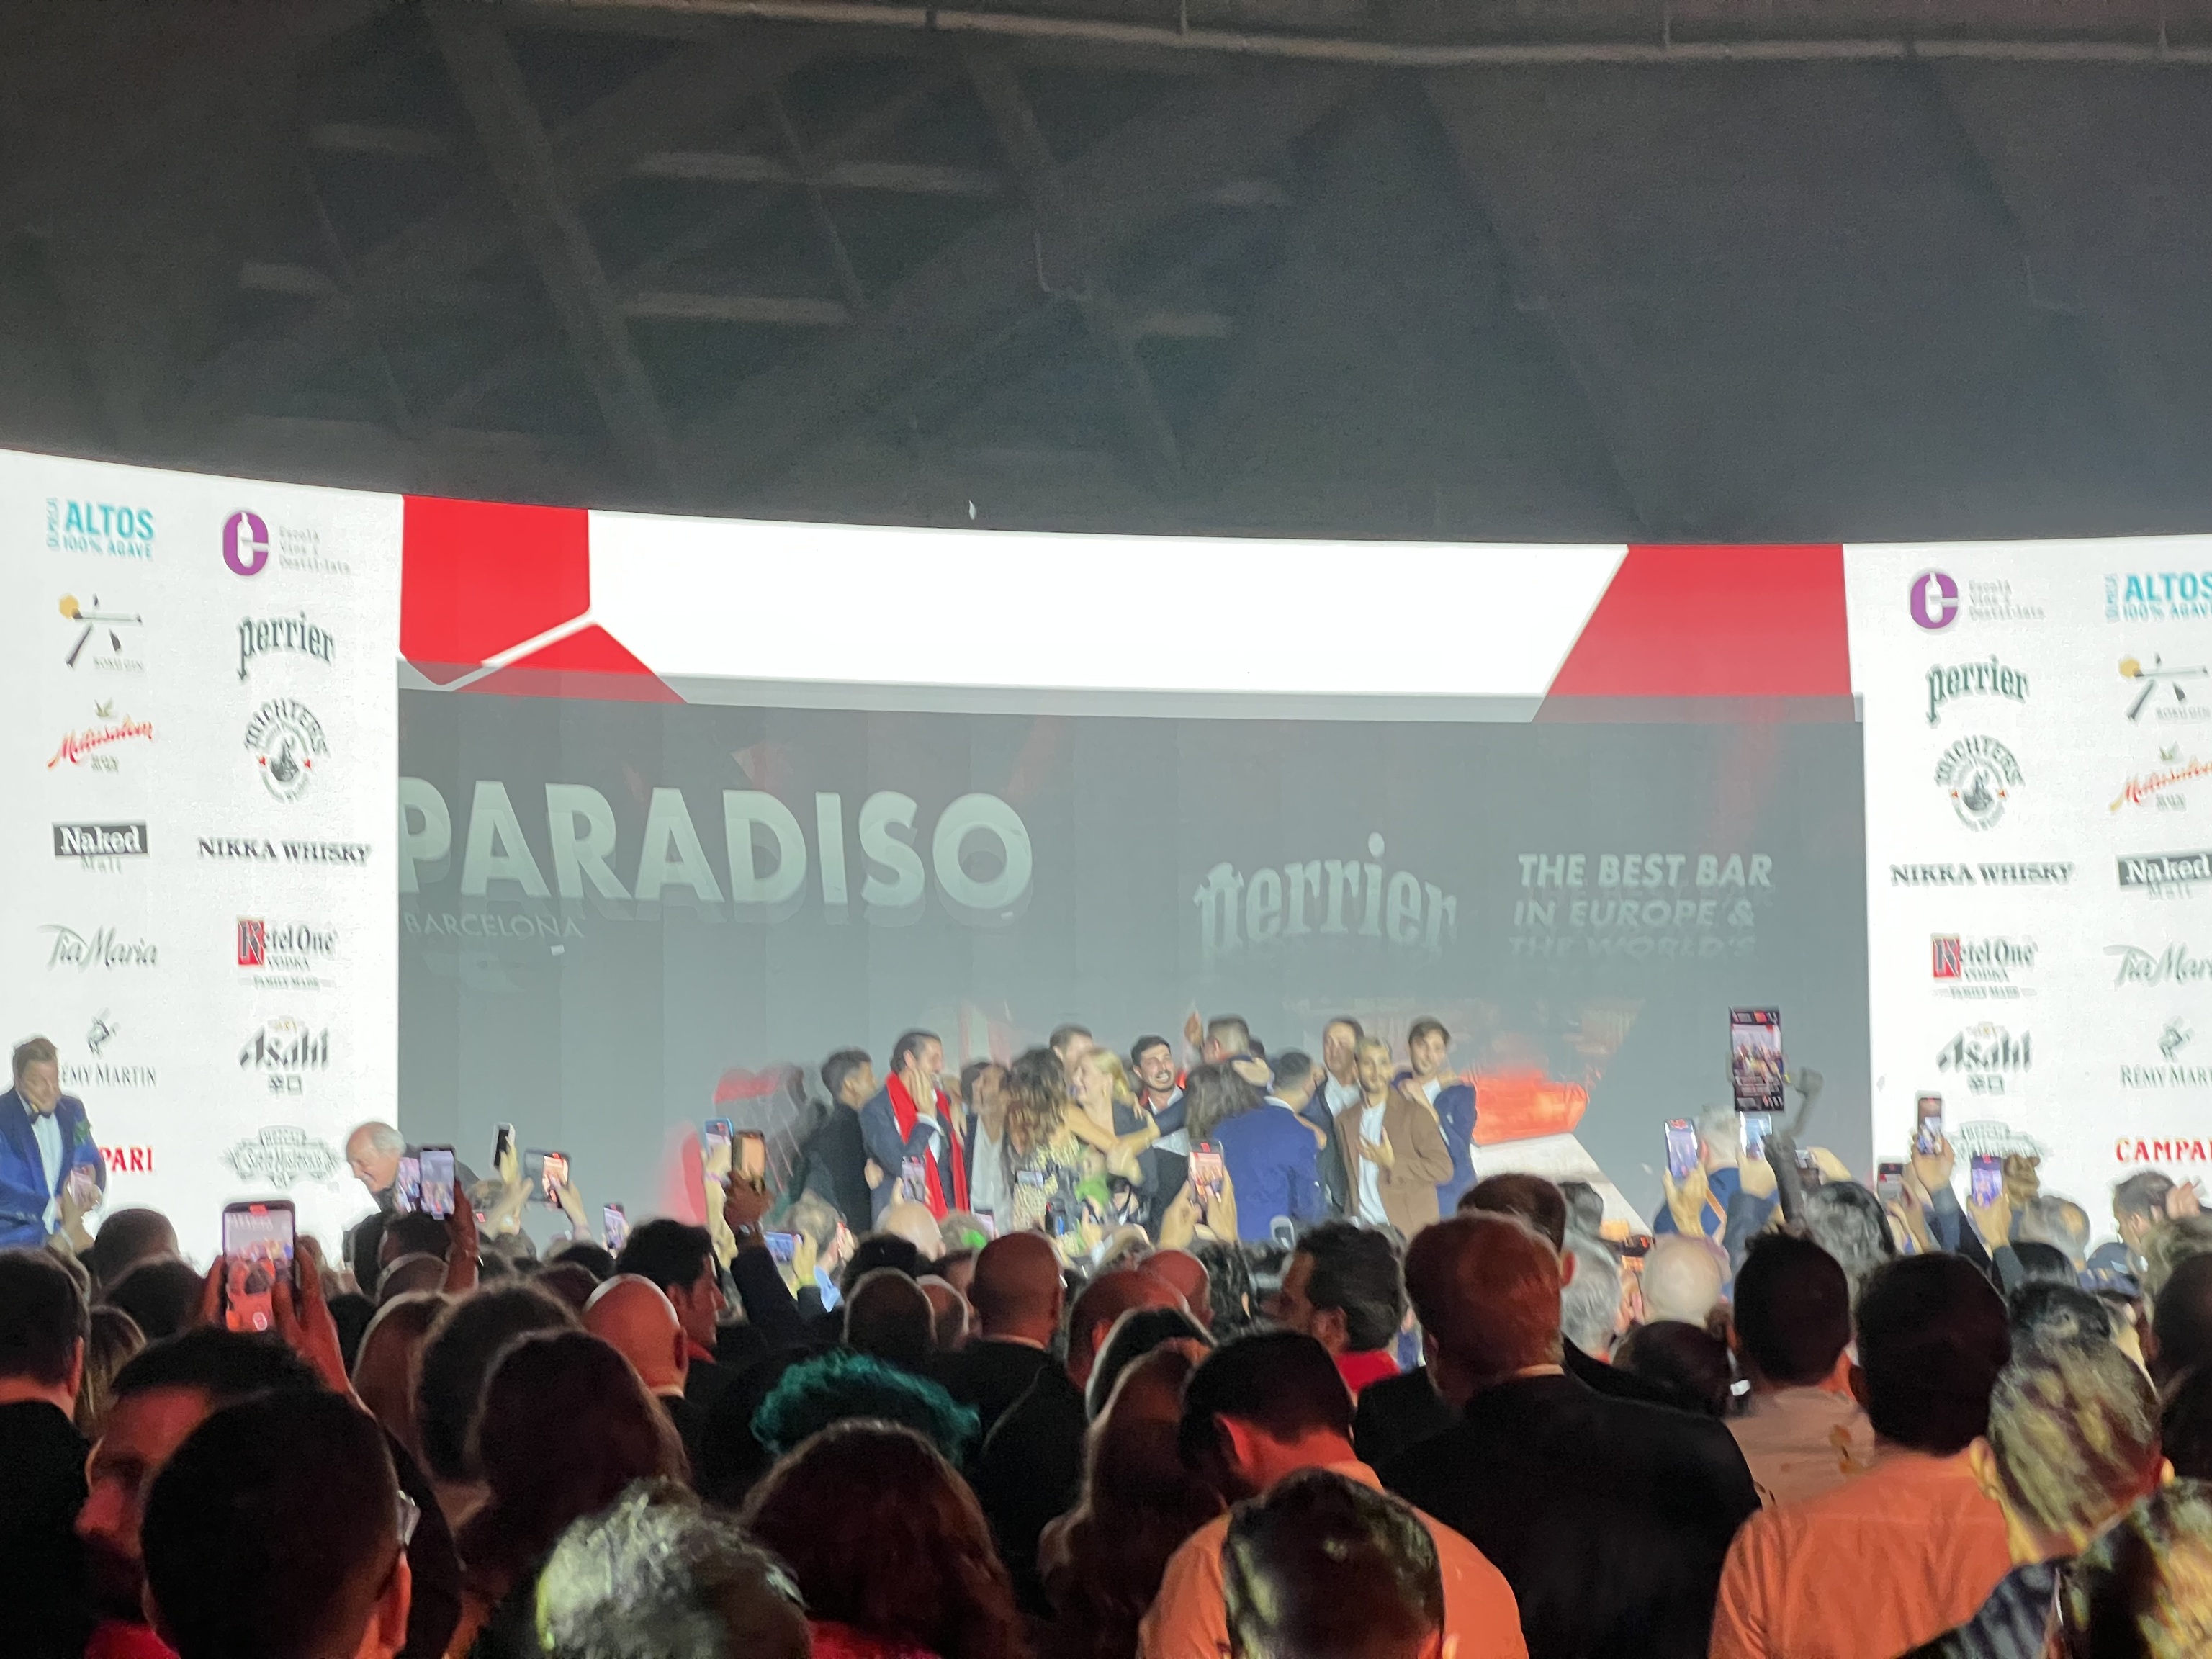 Momento en el que los ganadores de Paradiso Barcelona han subido a recoger su galardón como mejor bar del mundo, según 50 Best Bars.